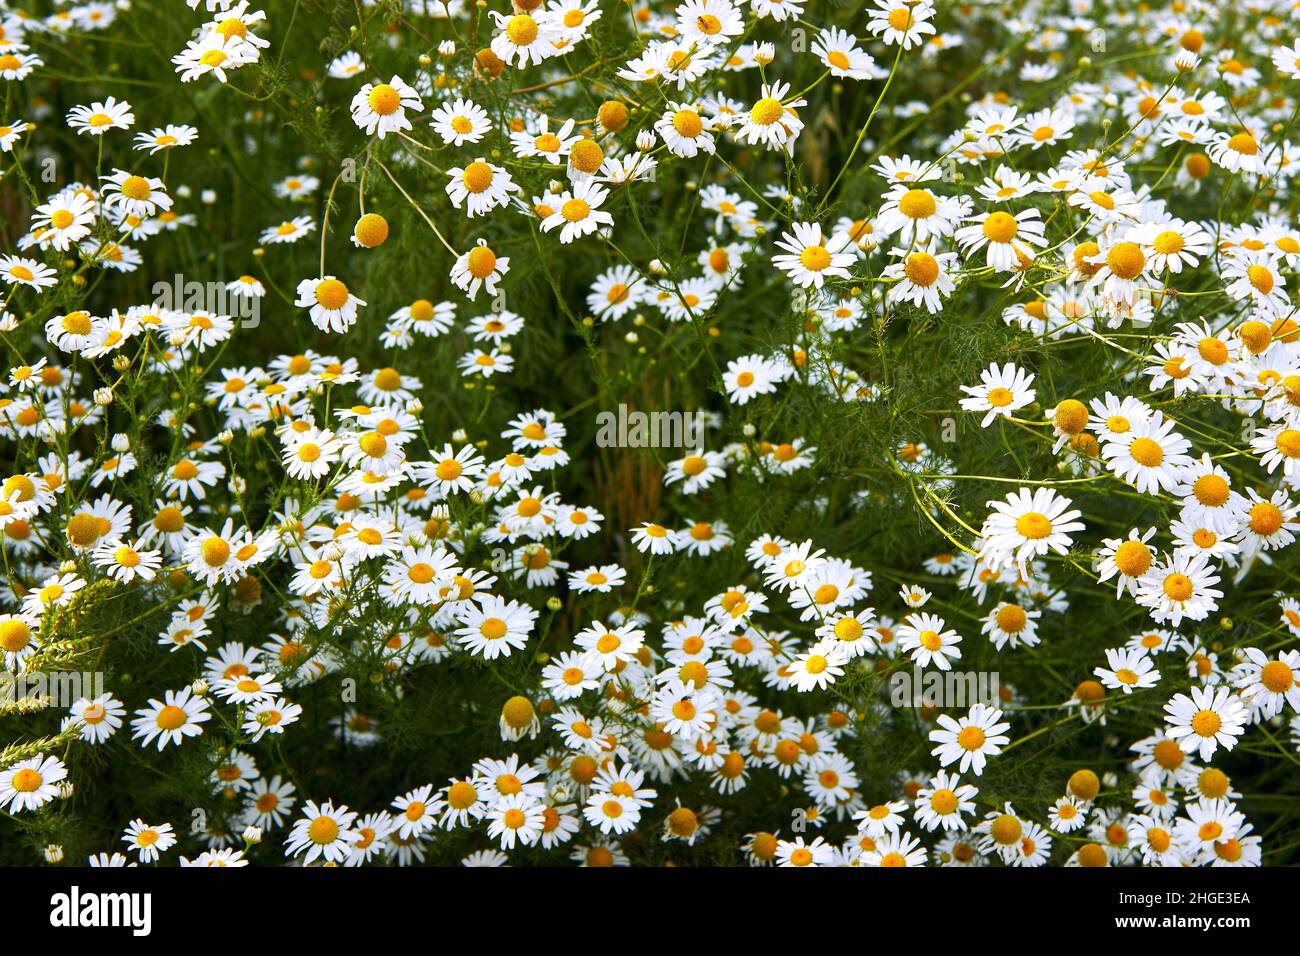 Feld große weiße Kamillen Blumen Nahaufnahme. Sommer Natur Hintergrund mit blühenden medizinischen Kamillen. Wunderschöne Wiese. Blumenkonzept. Stockfoto